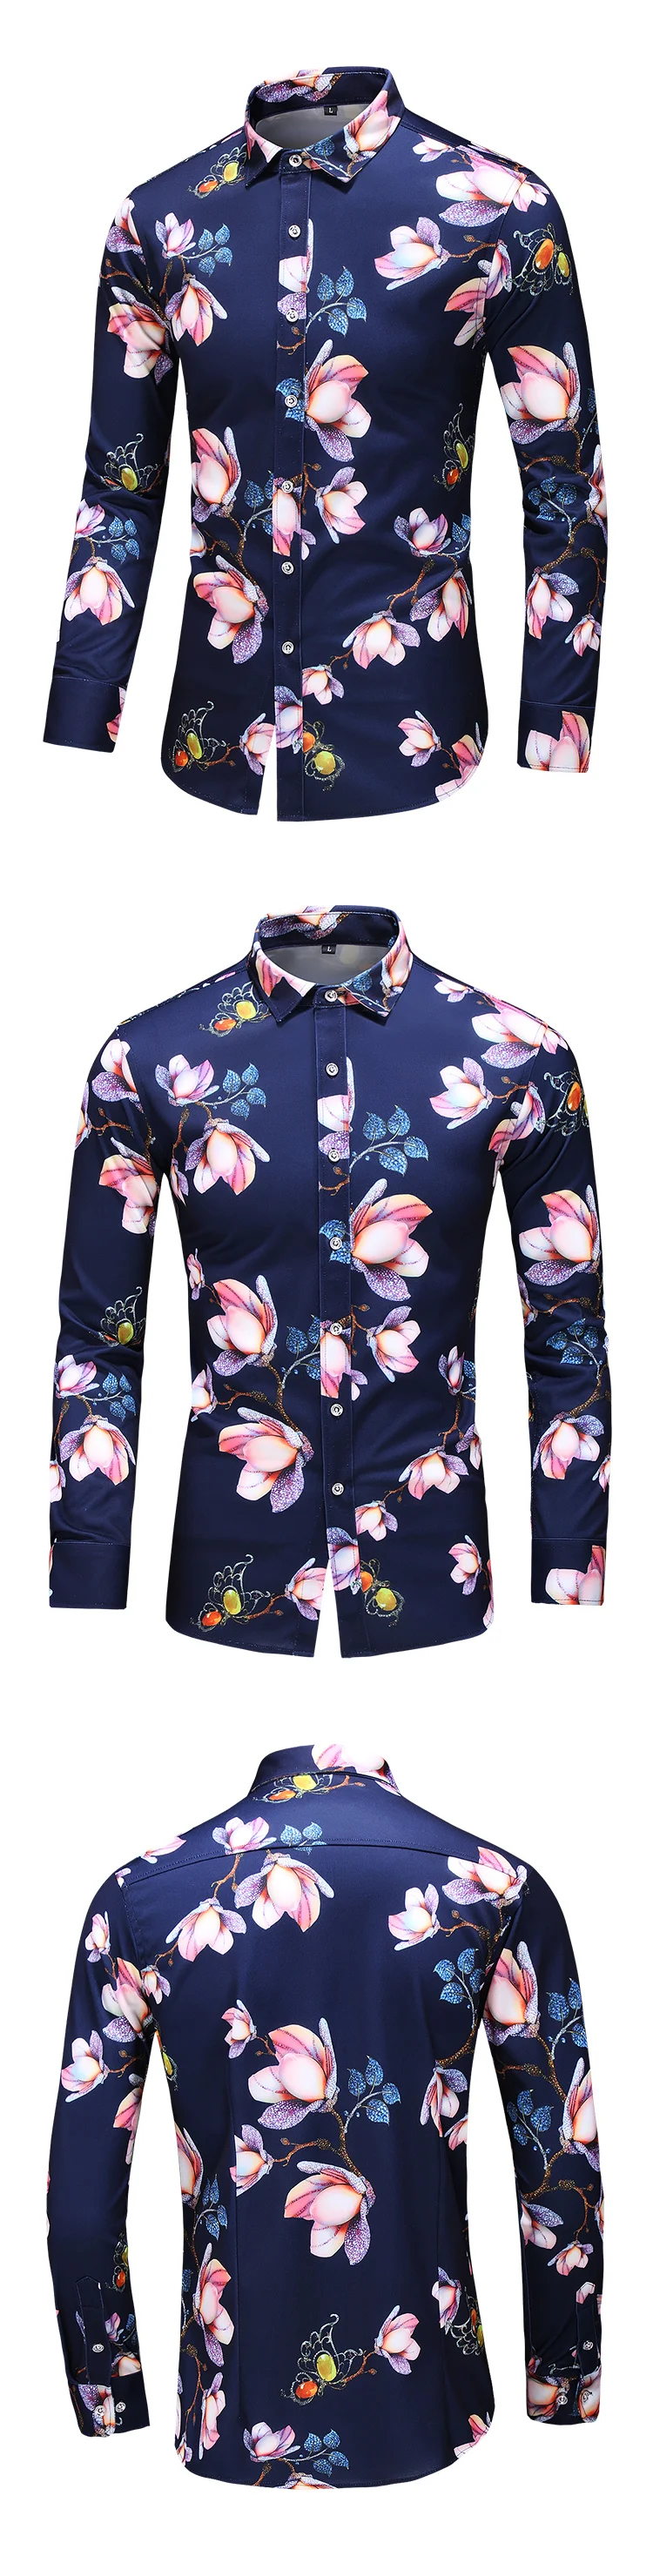 HCXY высокое качество Осенняя мужская Повседневная рубашка с длинным рукавом цветочные рубашки для мужчин легко ухаживать не гладильная Мужская рубашка с принтом